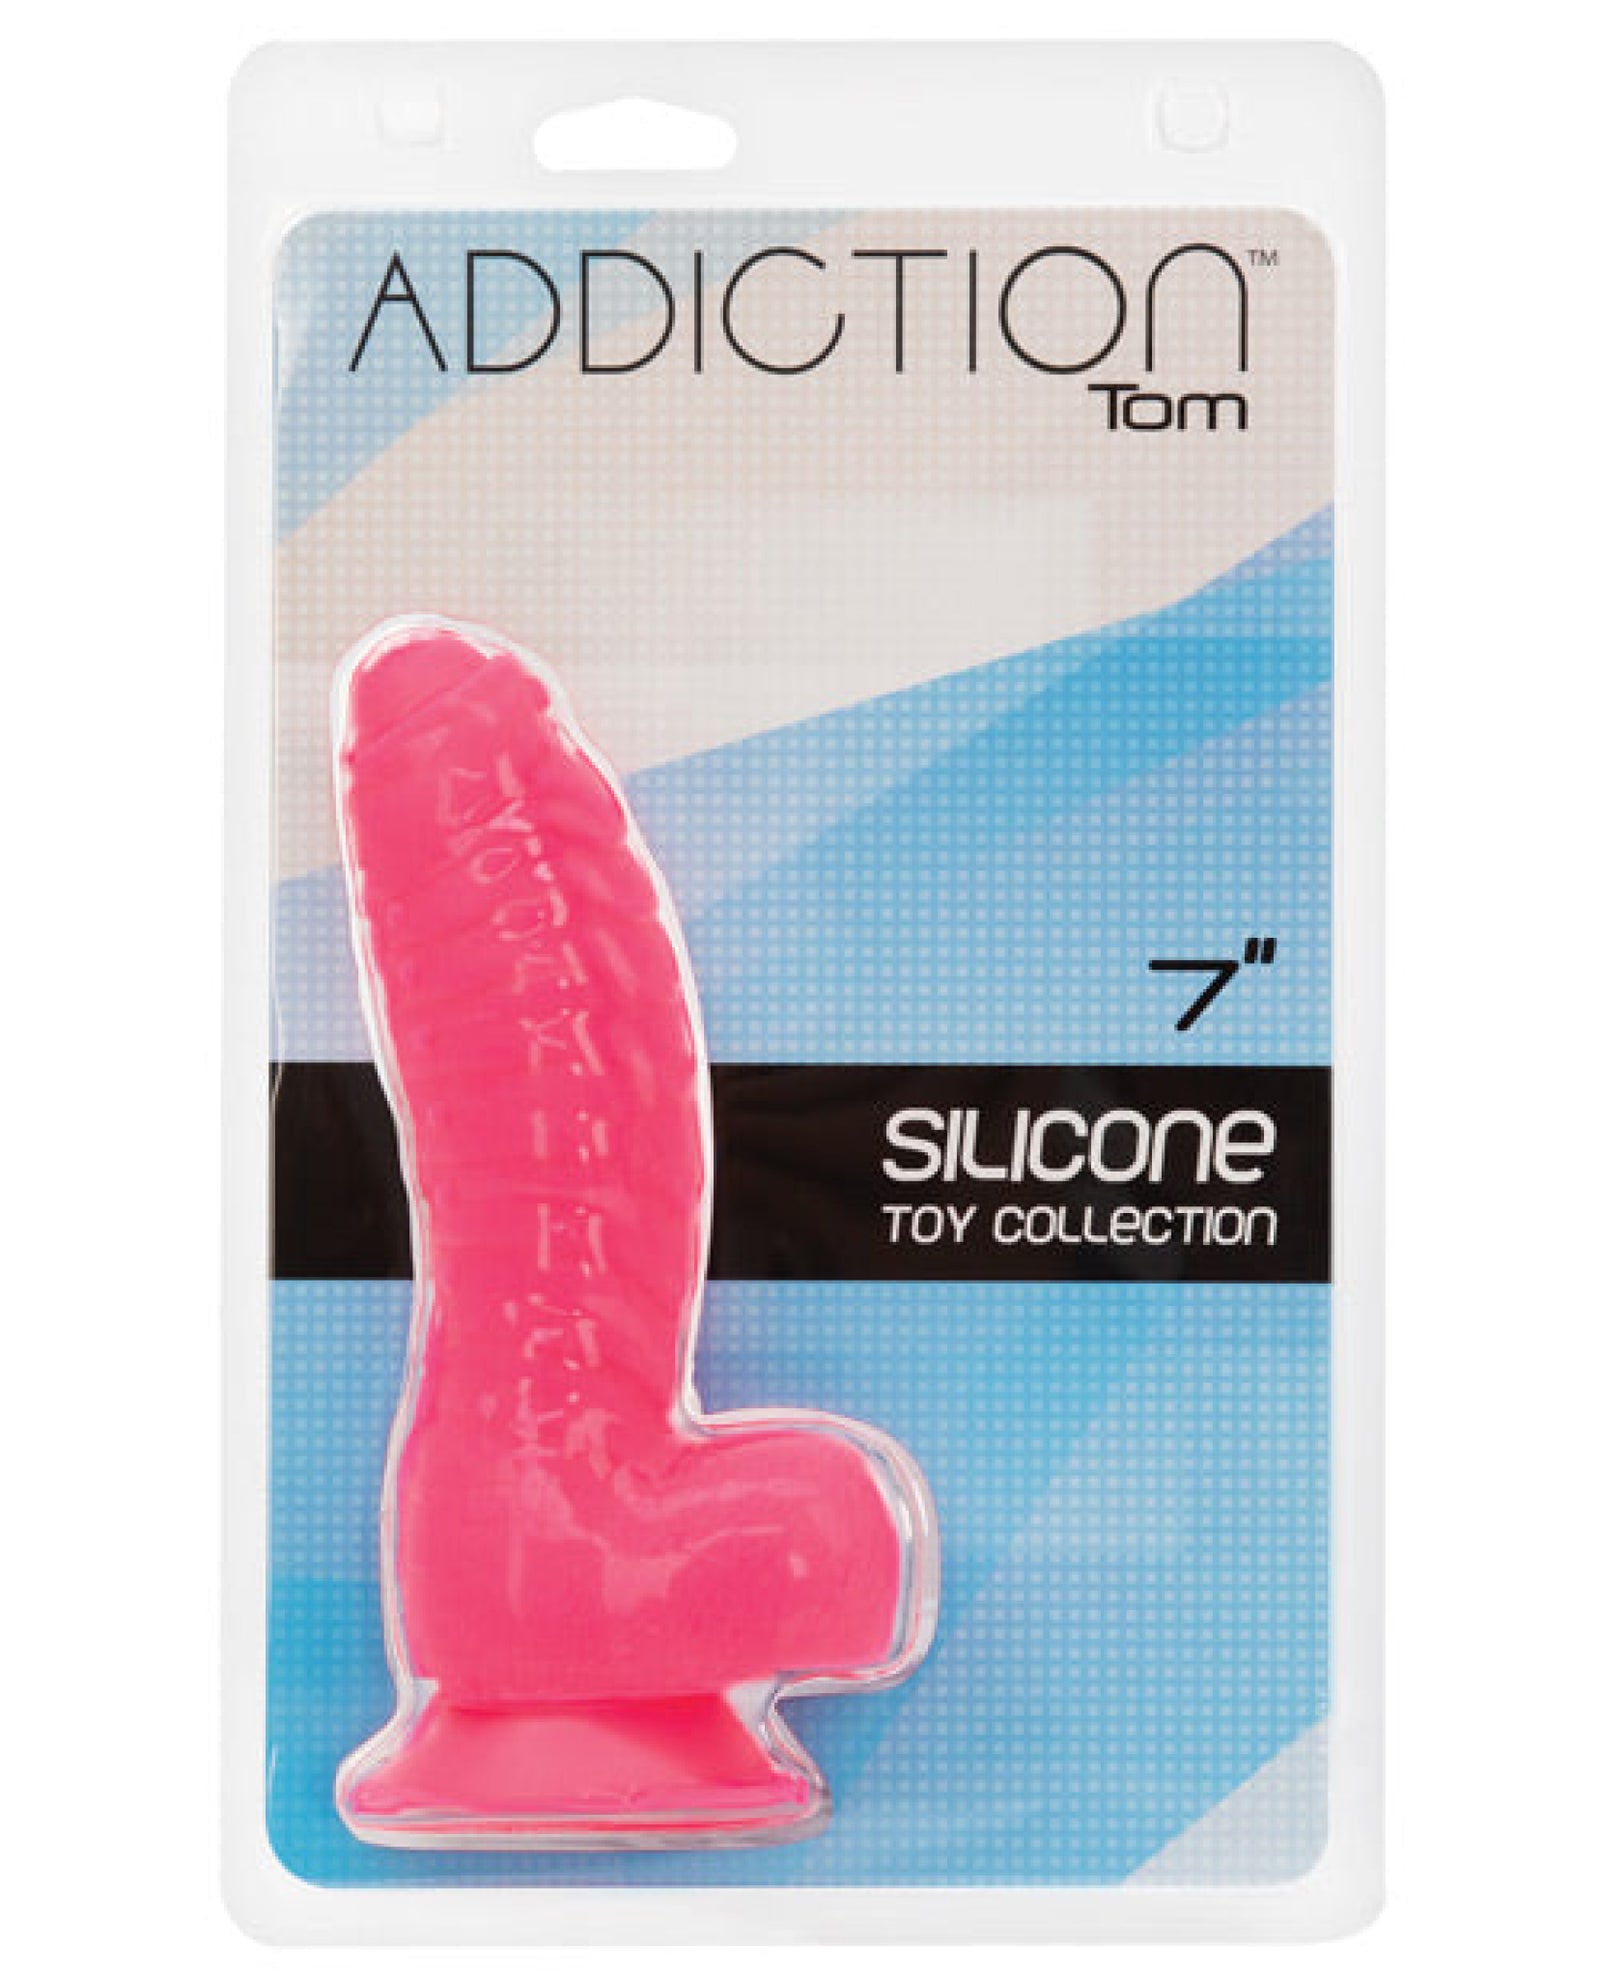 Addiction Tom 7" Dildo - Hot Pink BMS